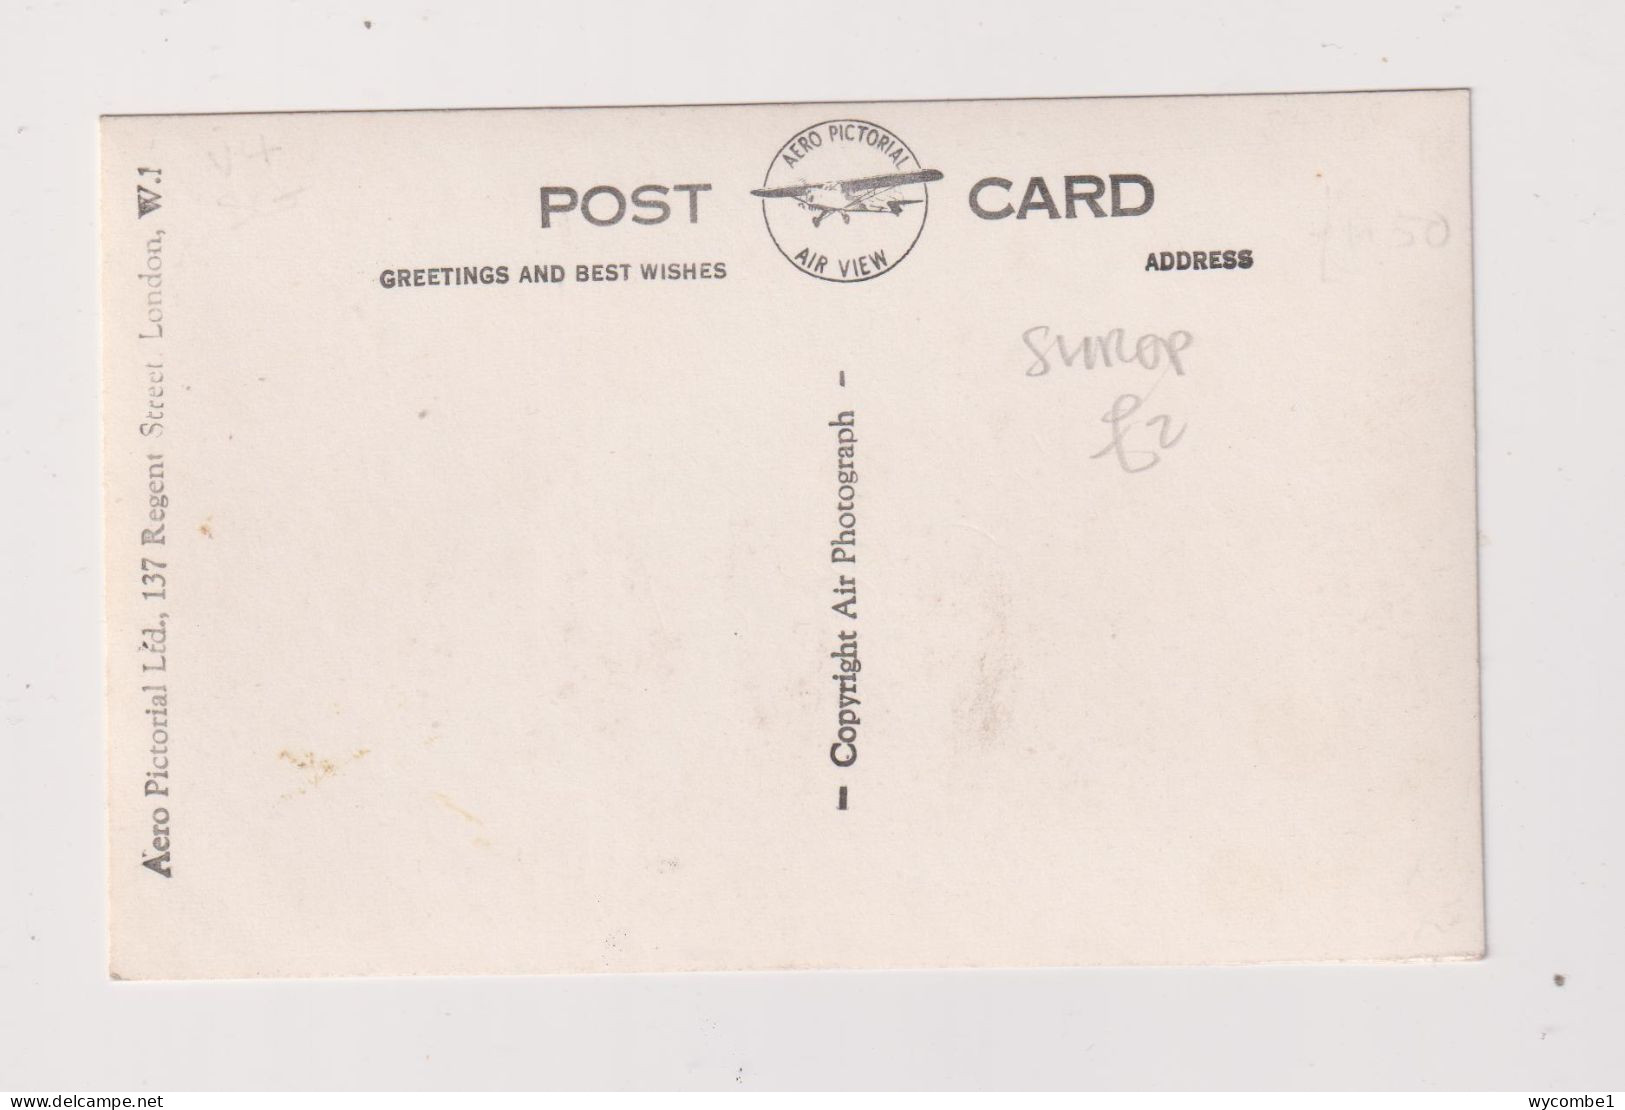 ENGLAND -  Church Stretton Longmynd Hotel  Unused Vintage Postcard - Shropshire